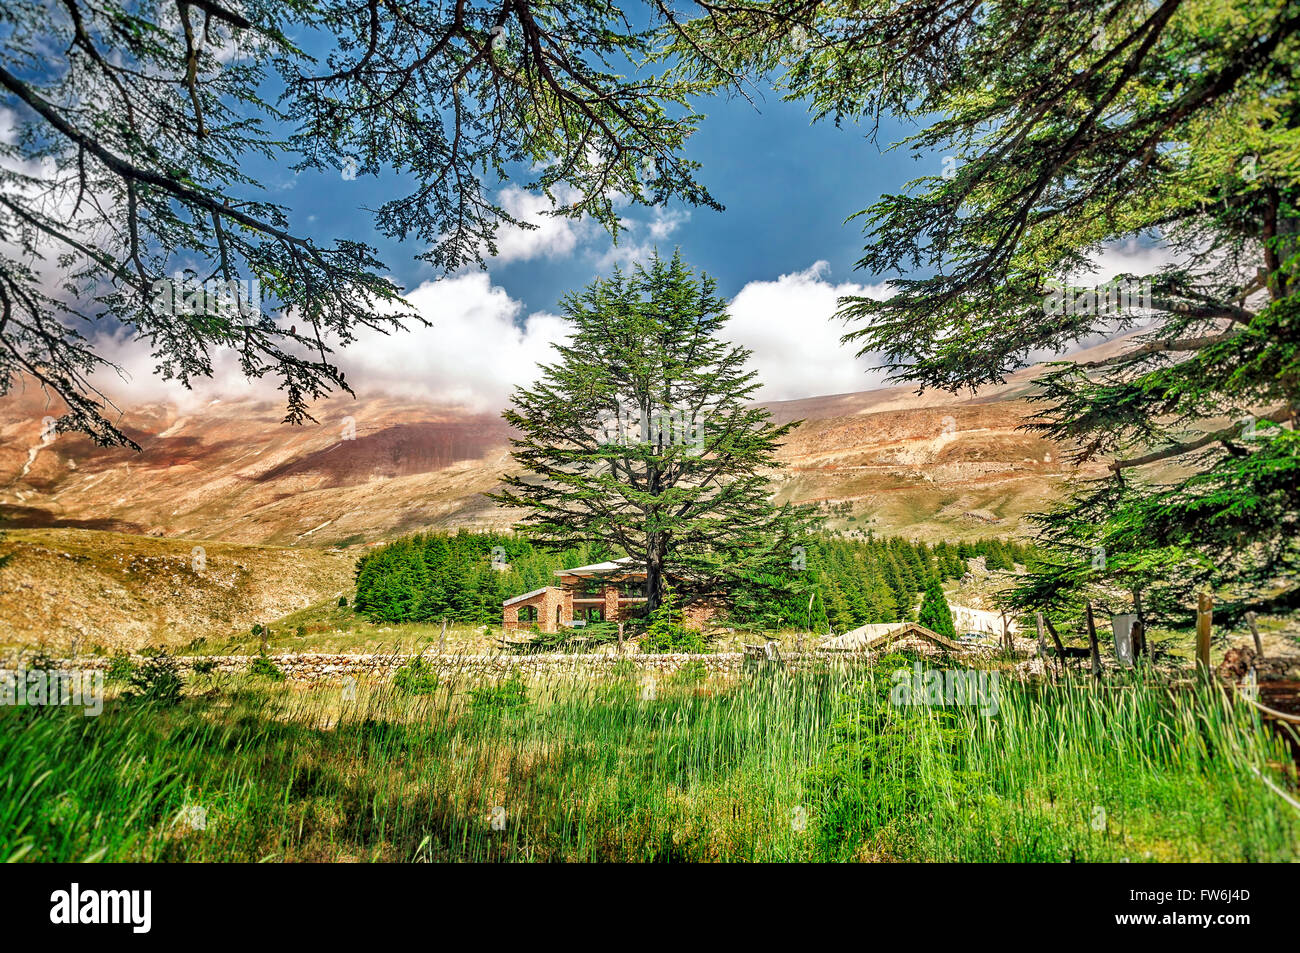 Zedern des Libanon, schönen alten Baum Zedernwald in den Bergen, erstaunlich, libanesische Natur, ruhige Landschaft Stockfoto